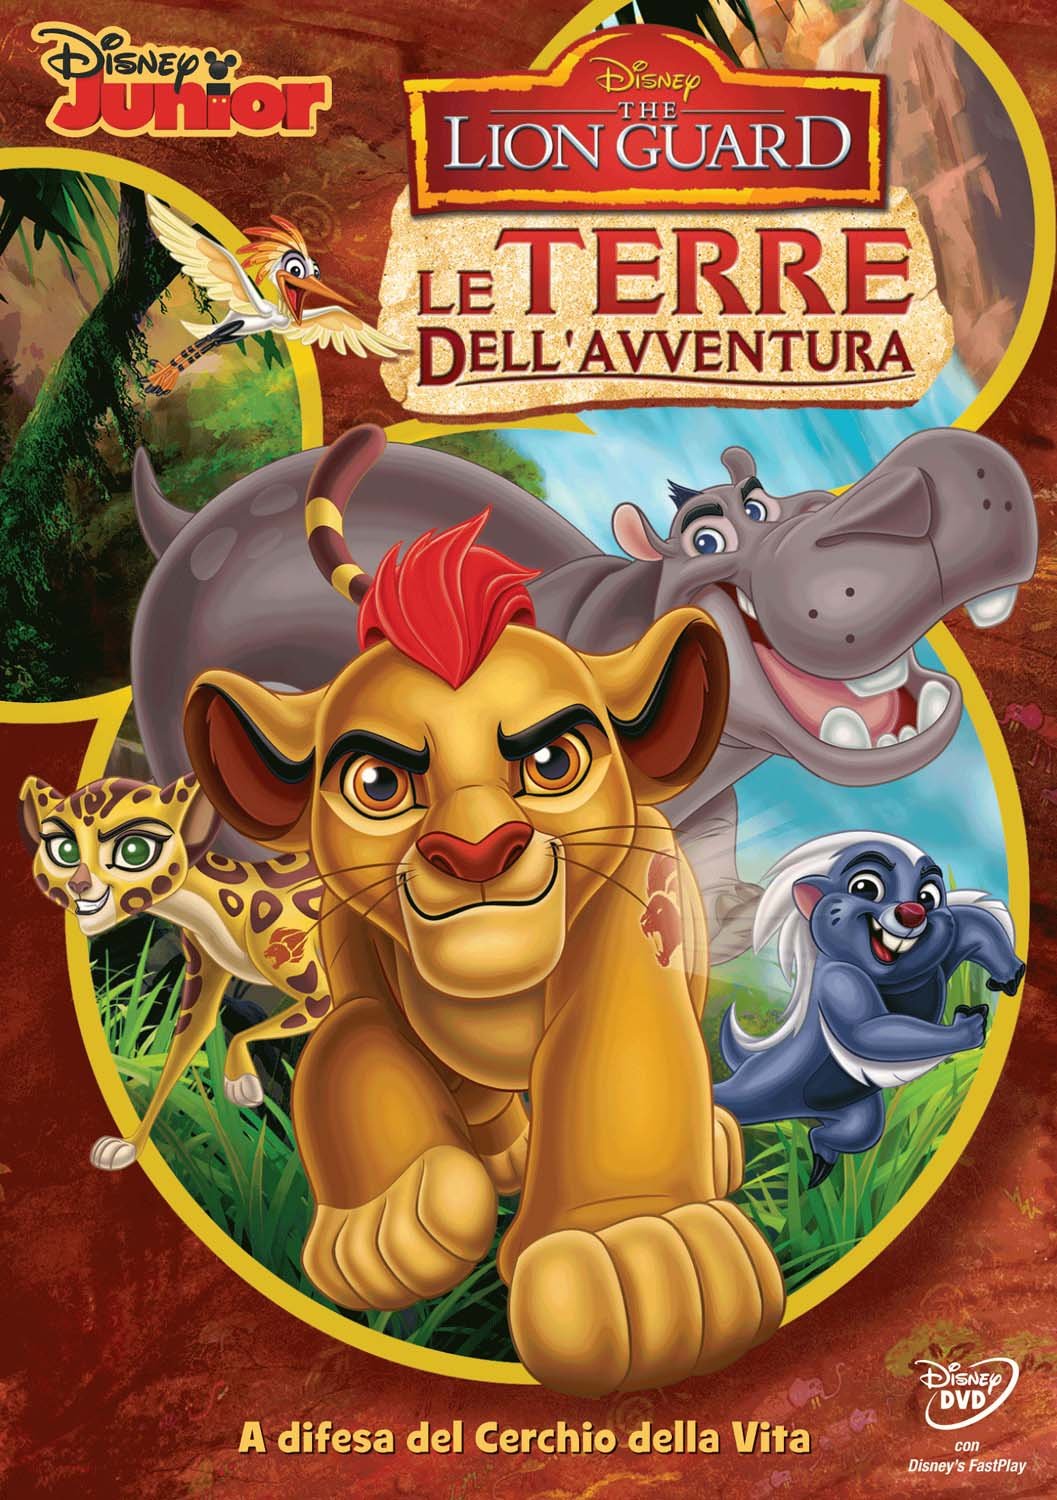 The Lion Guard DVD le terre dellavventura - cartoni animati home video